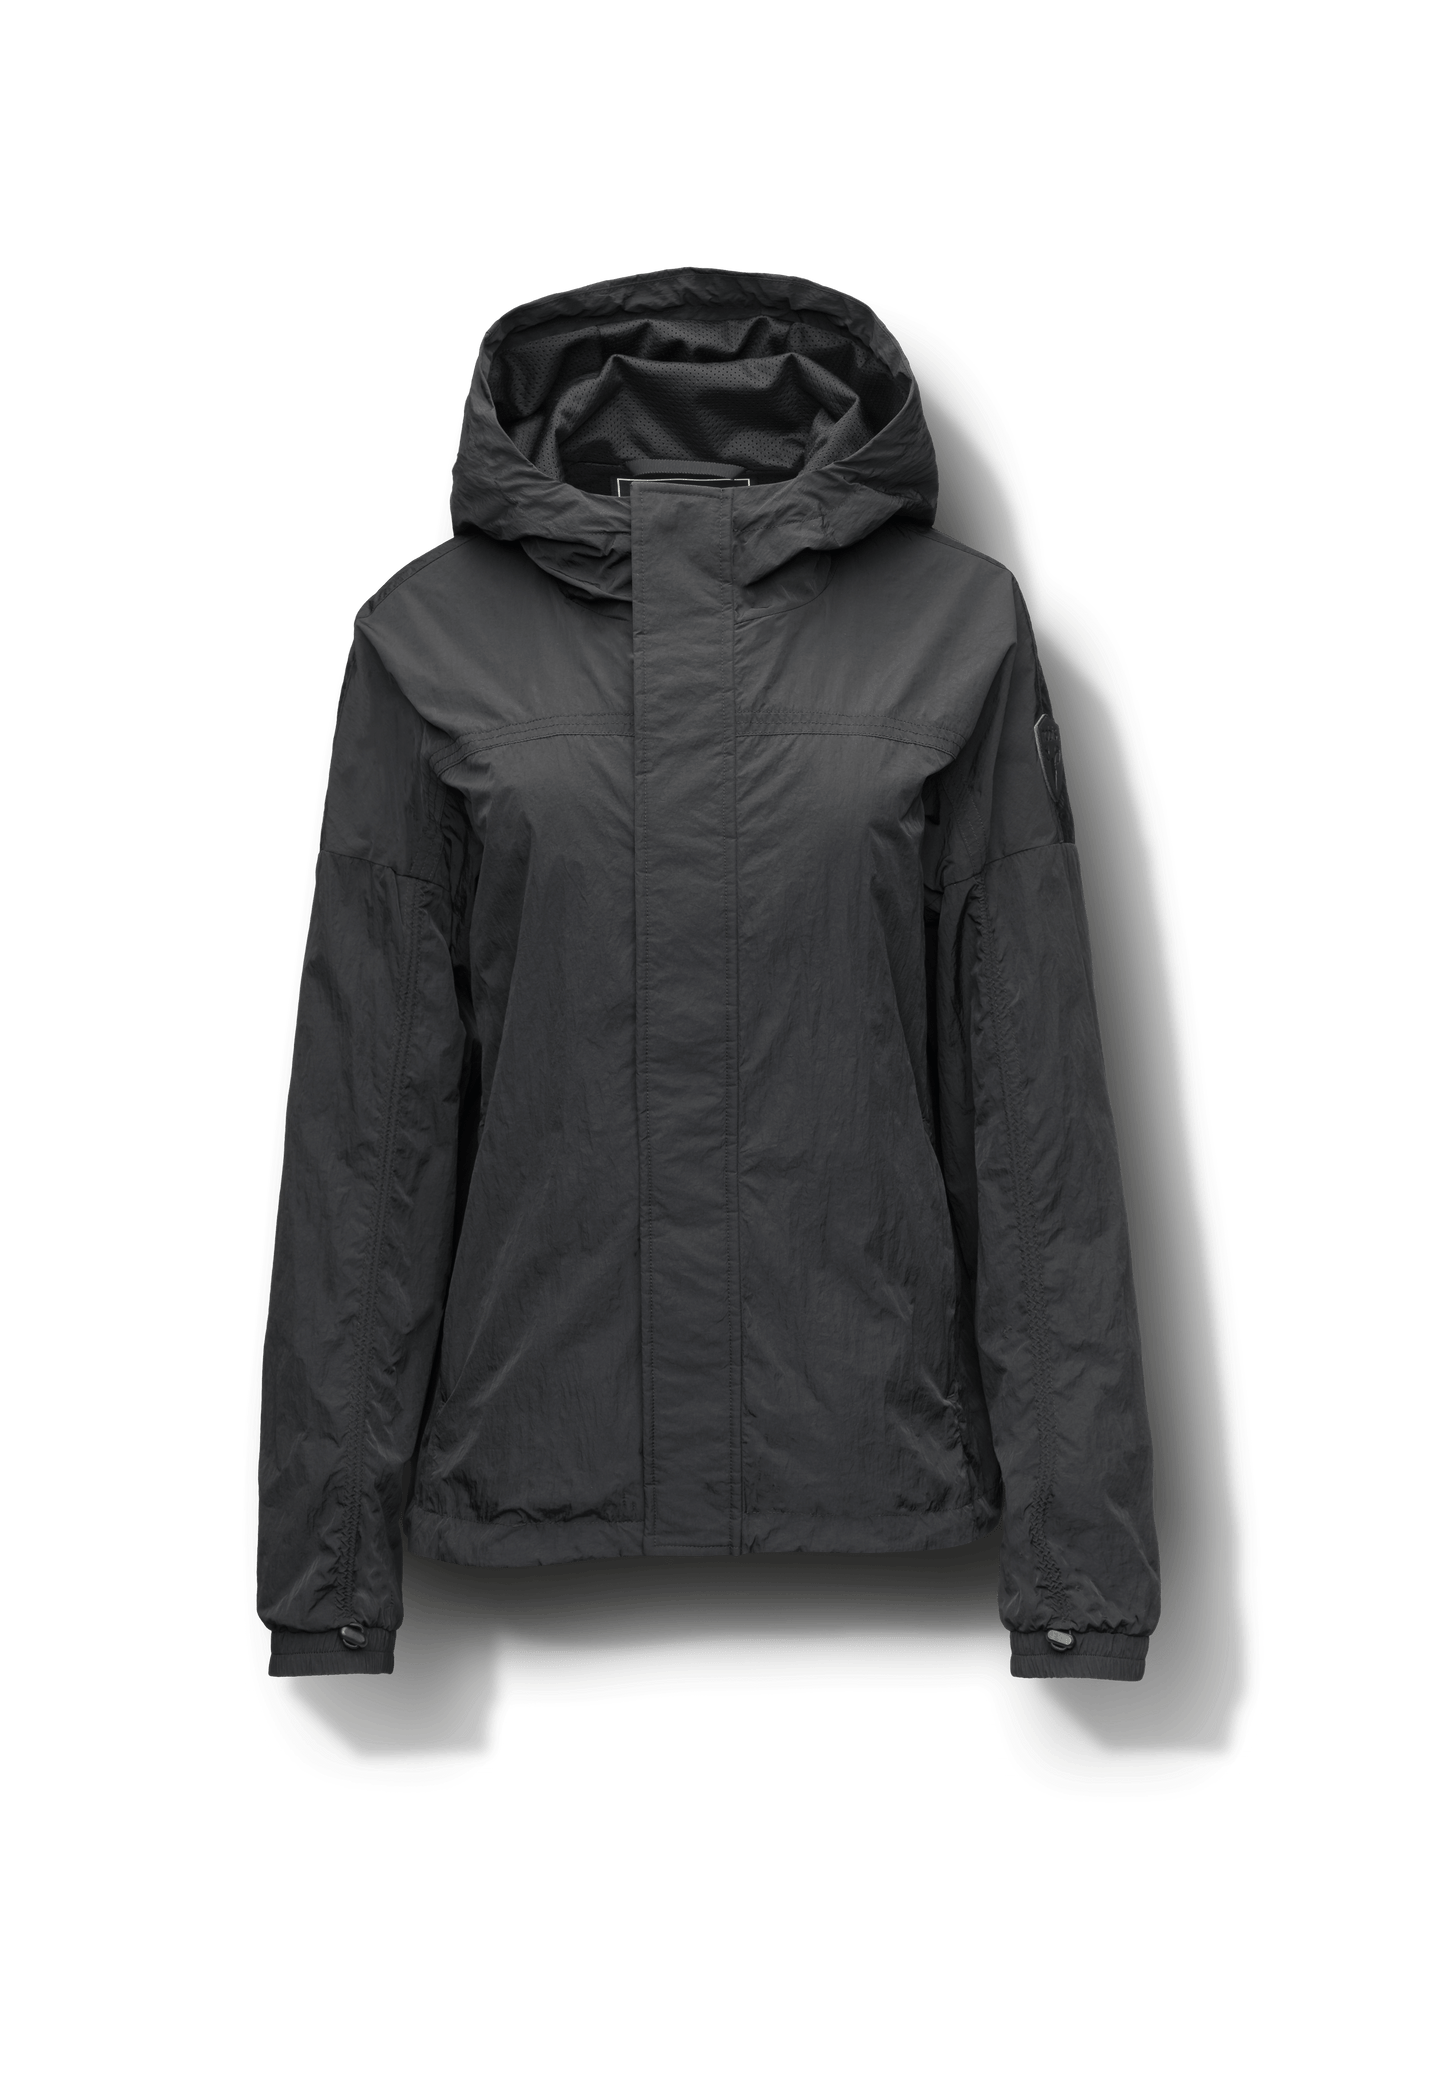 Hartley Women's Tailored Rain Jacket